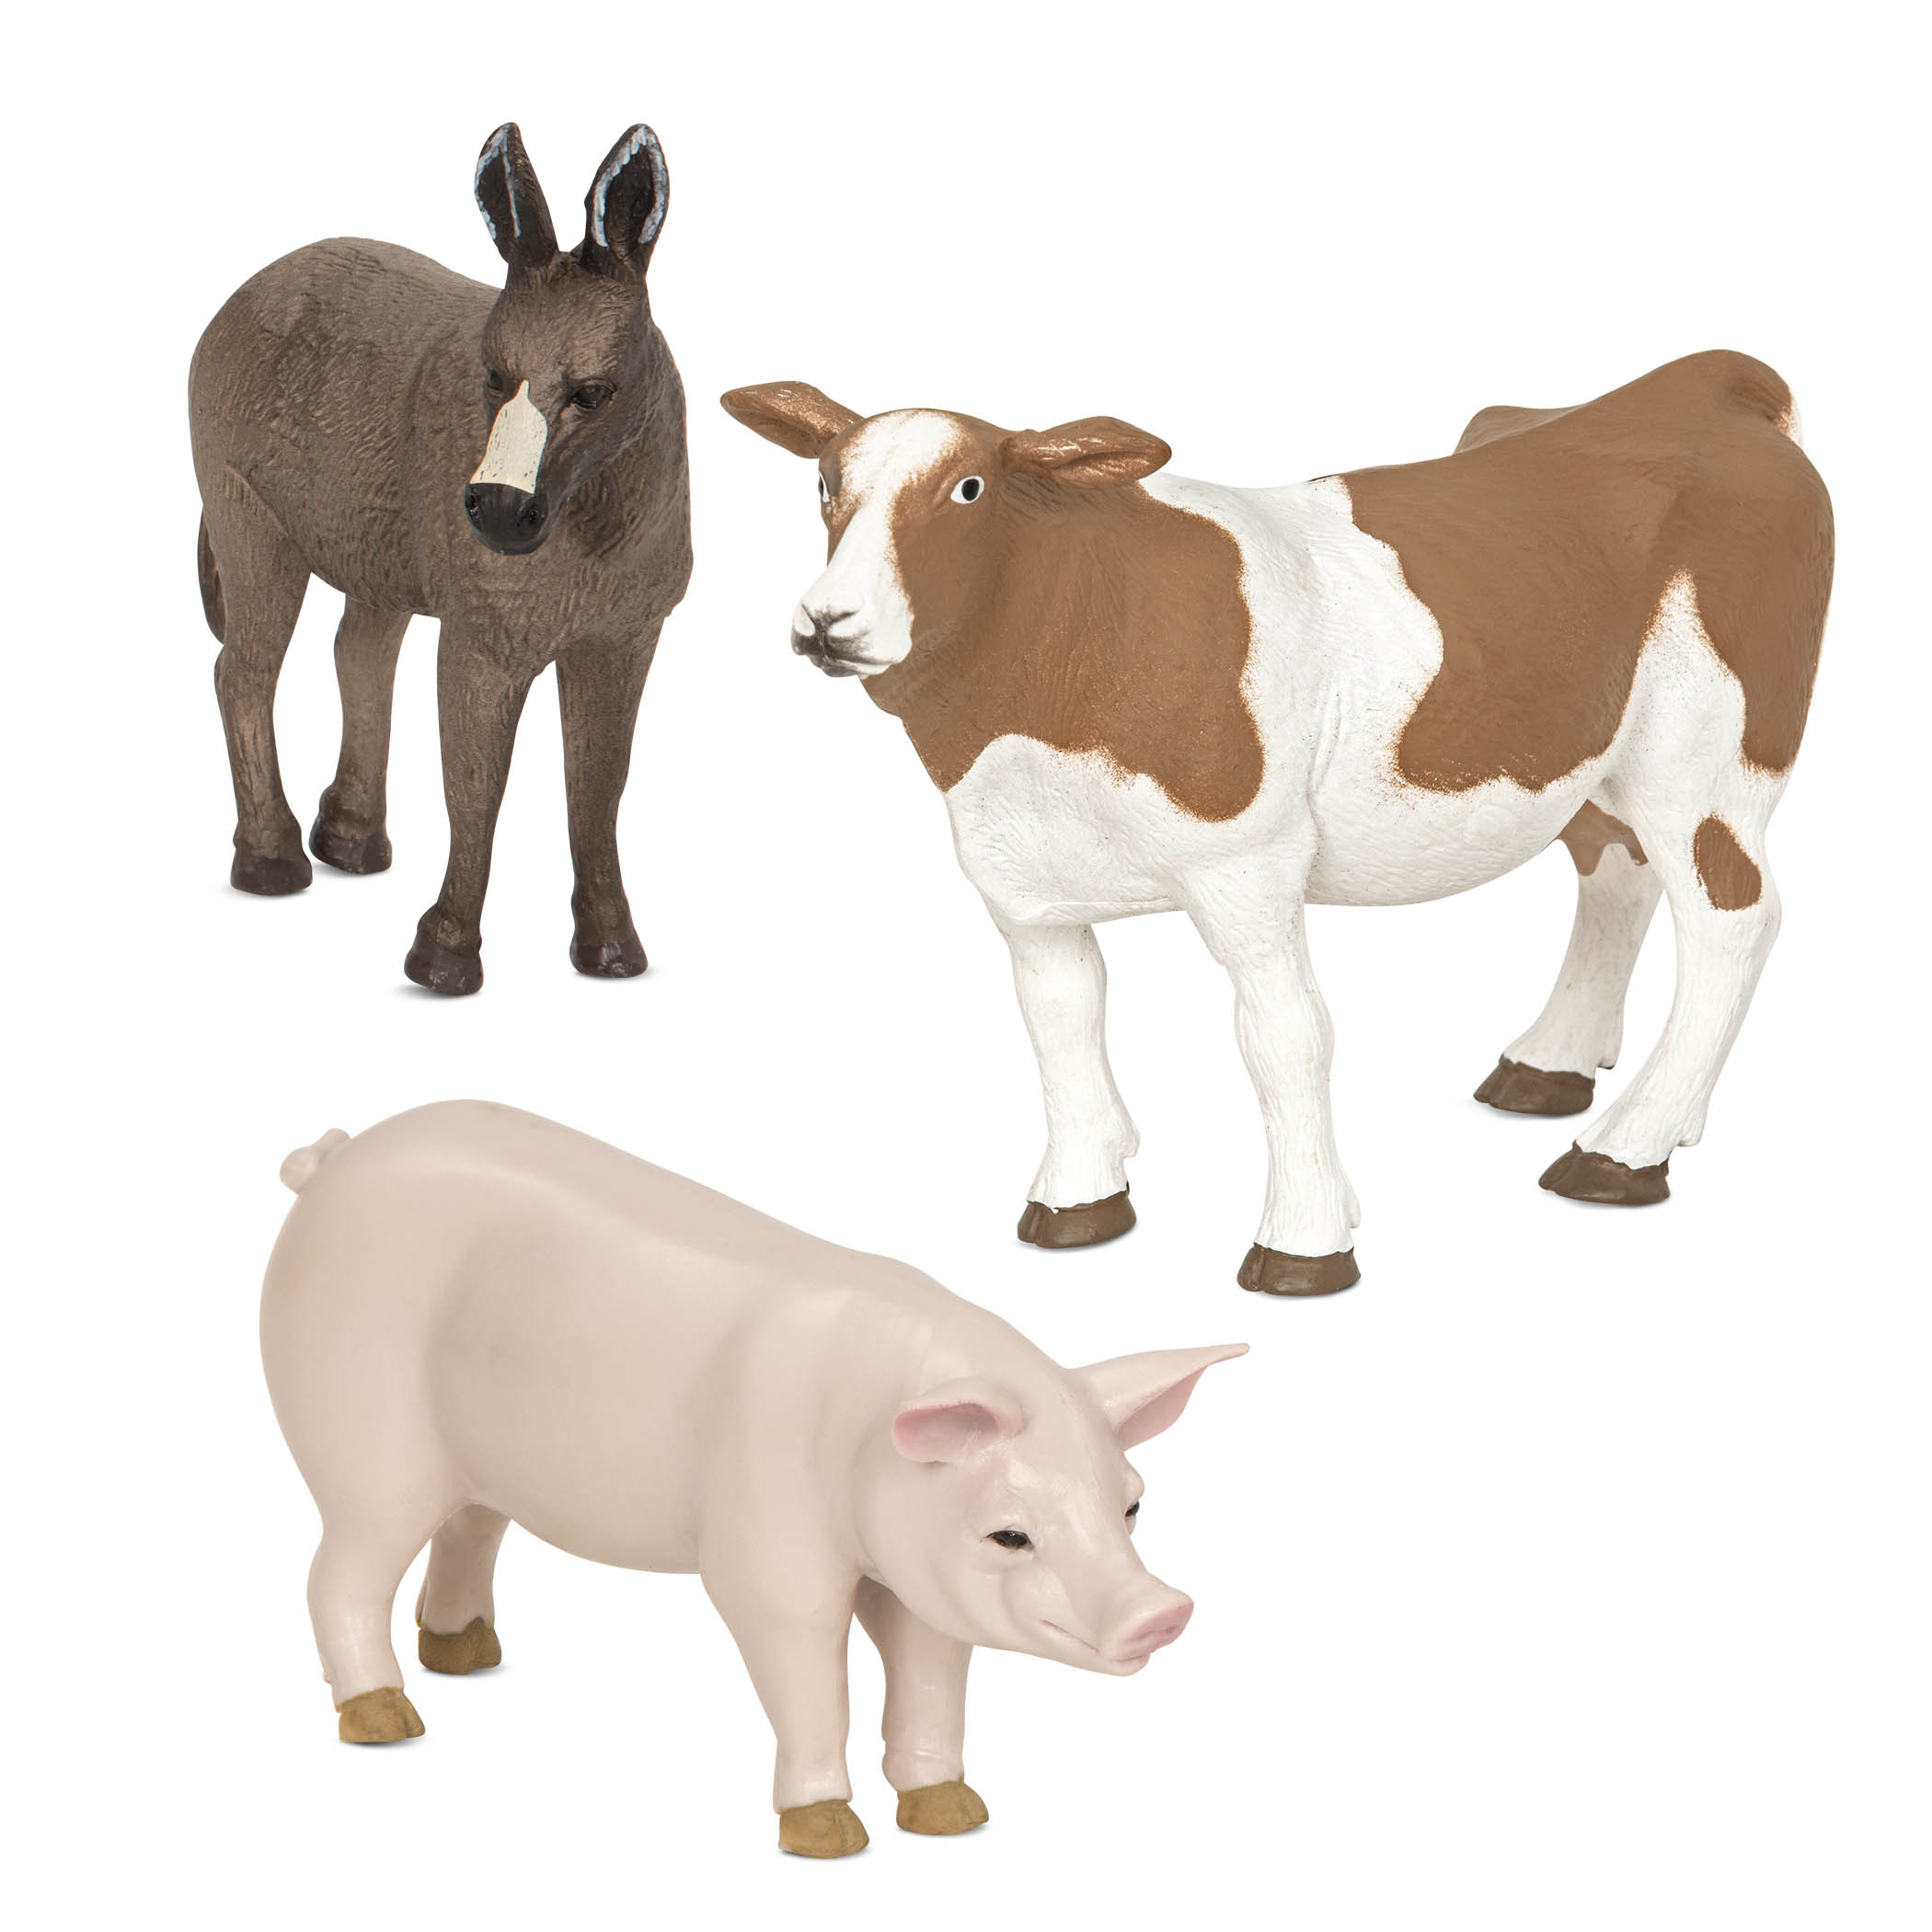 Animali della fattoria Terra Maiale, asino, mucca